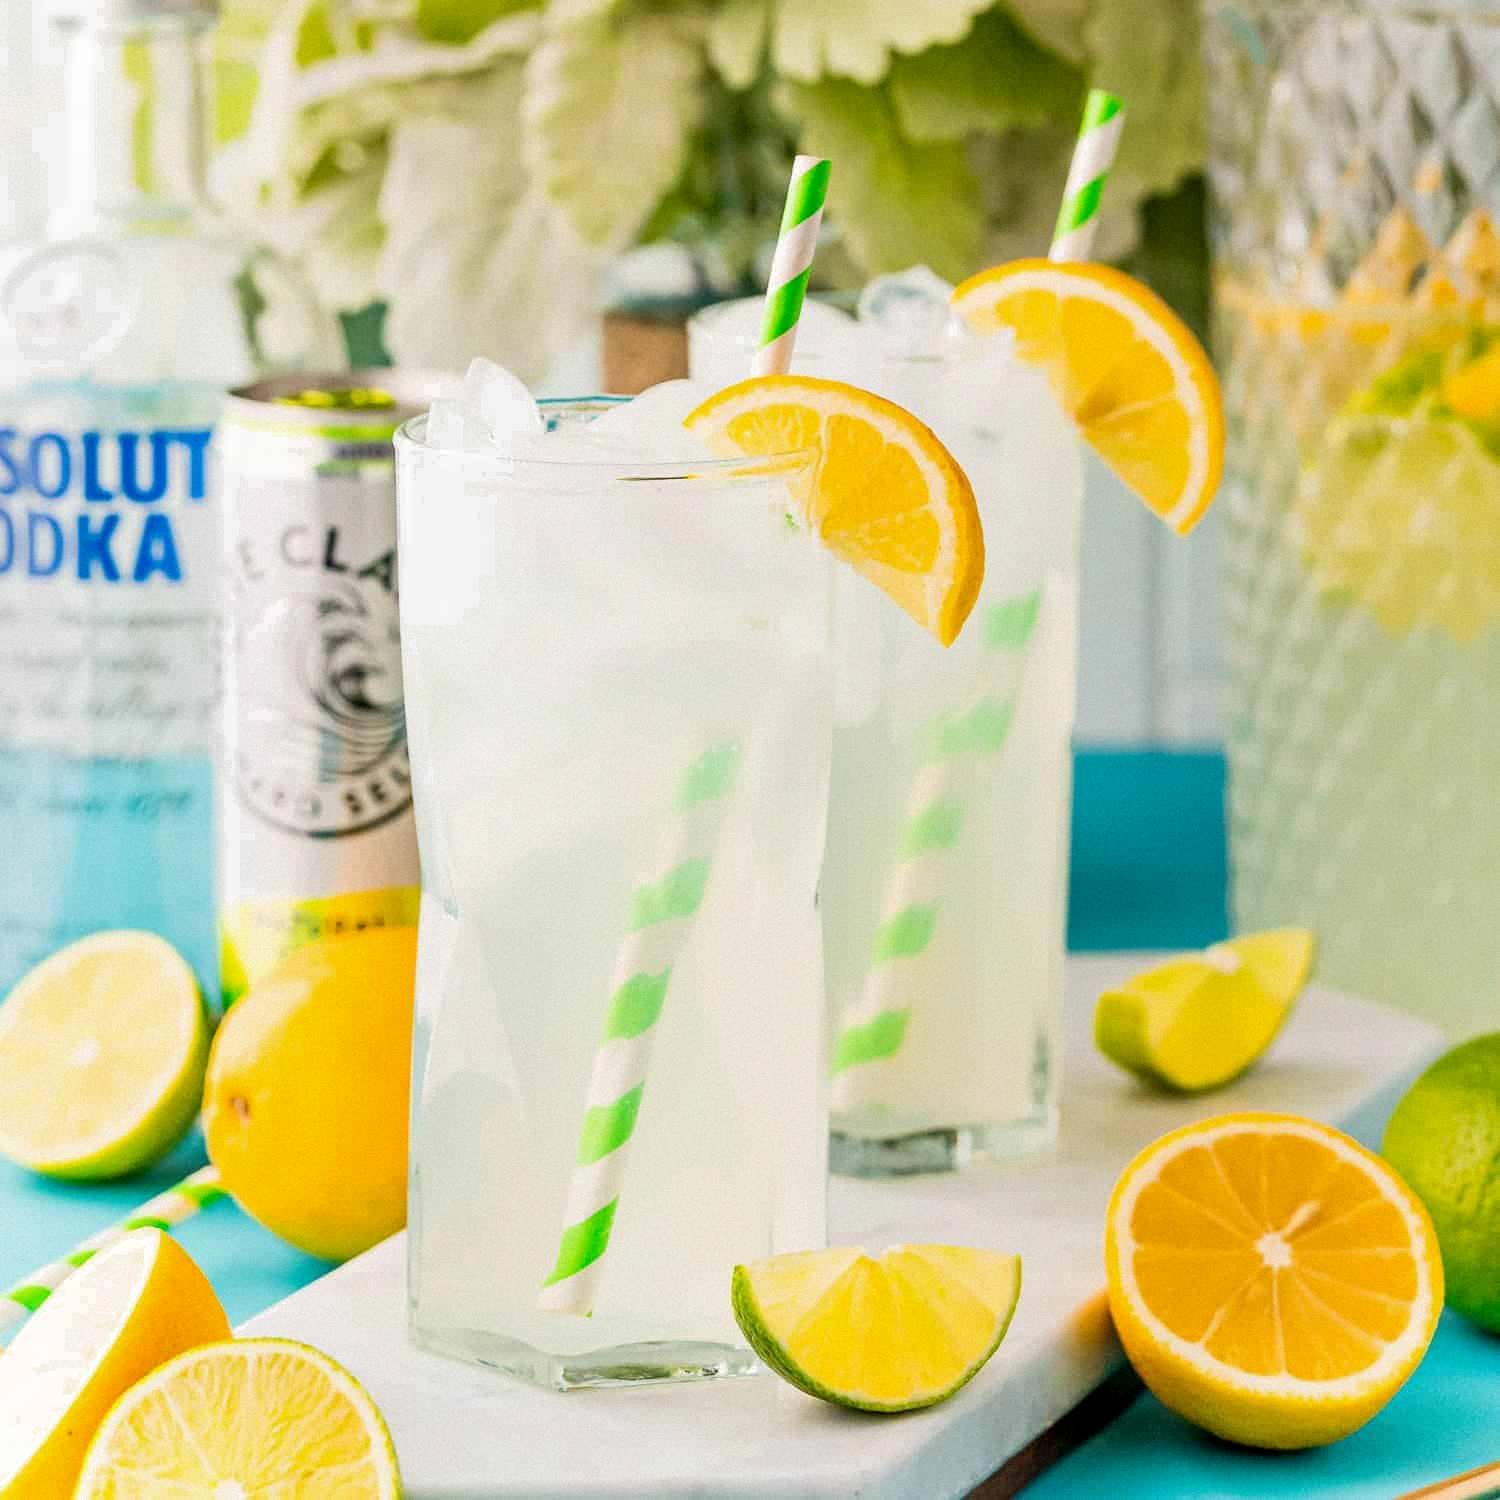 vodka and lemonade